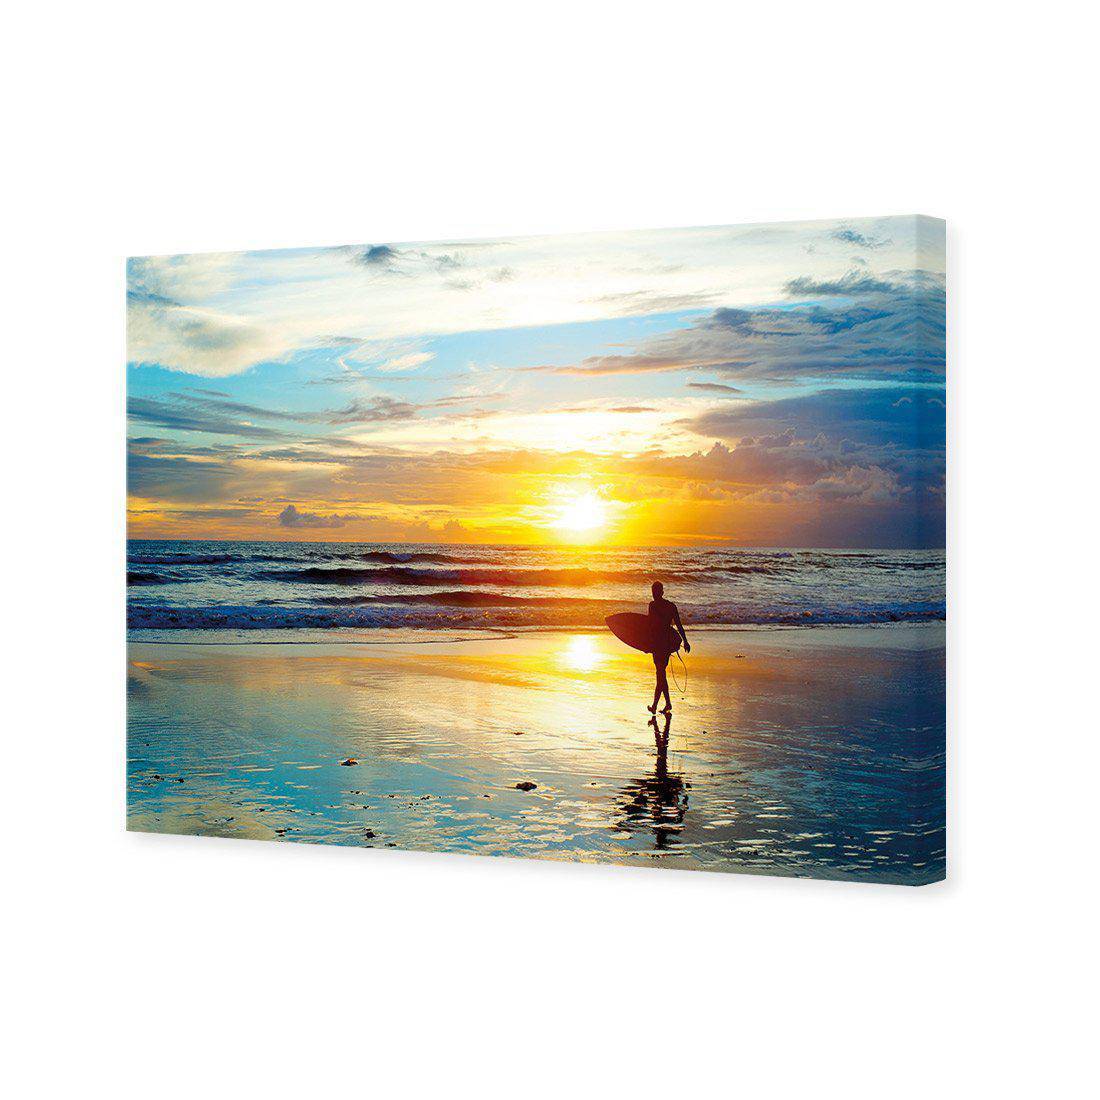 Sunset Surf Canvas Art-Canvas-Wall Art Designs-45x30cm-Canvas - No Frame-Wall Art Designs